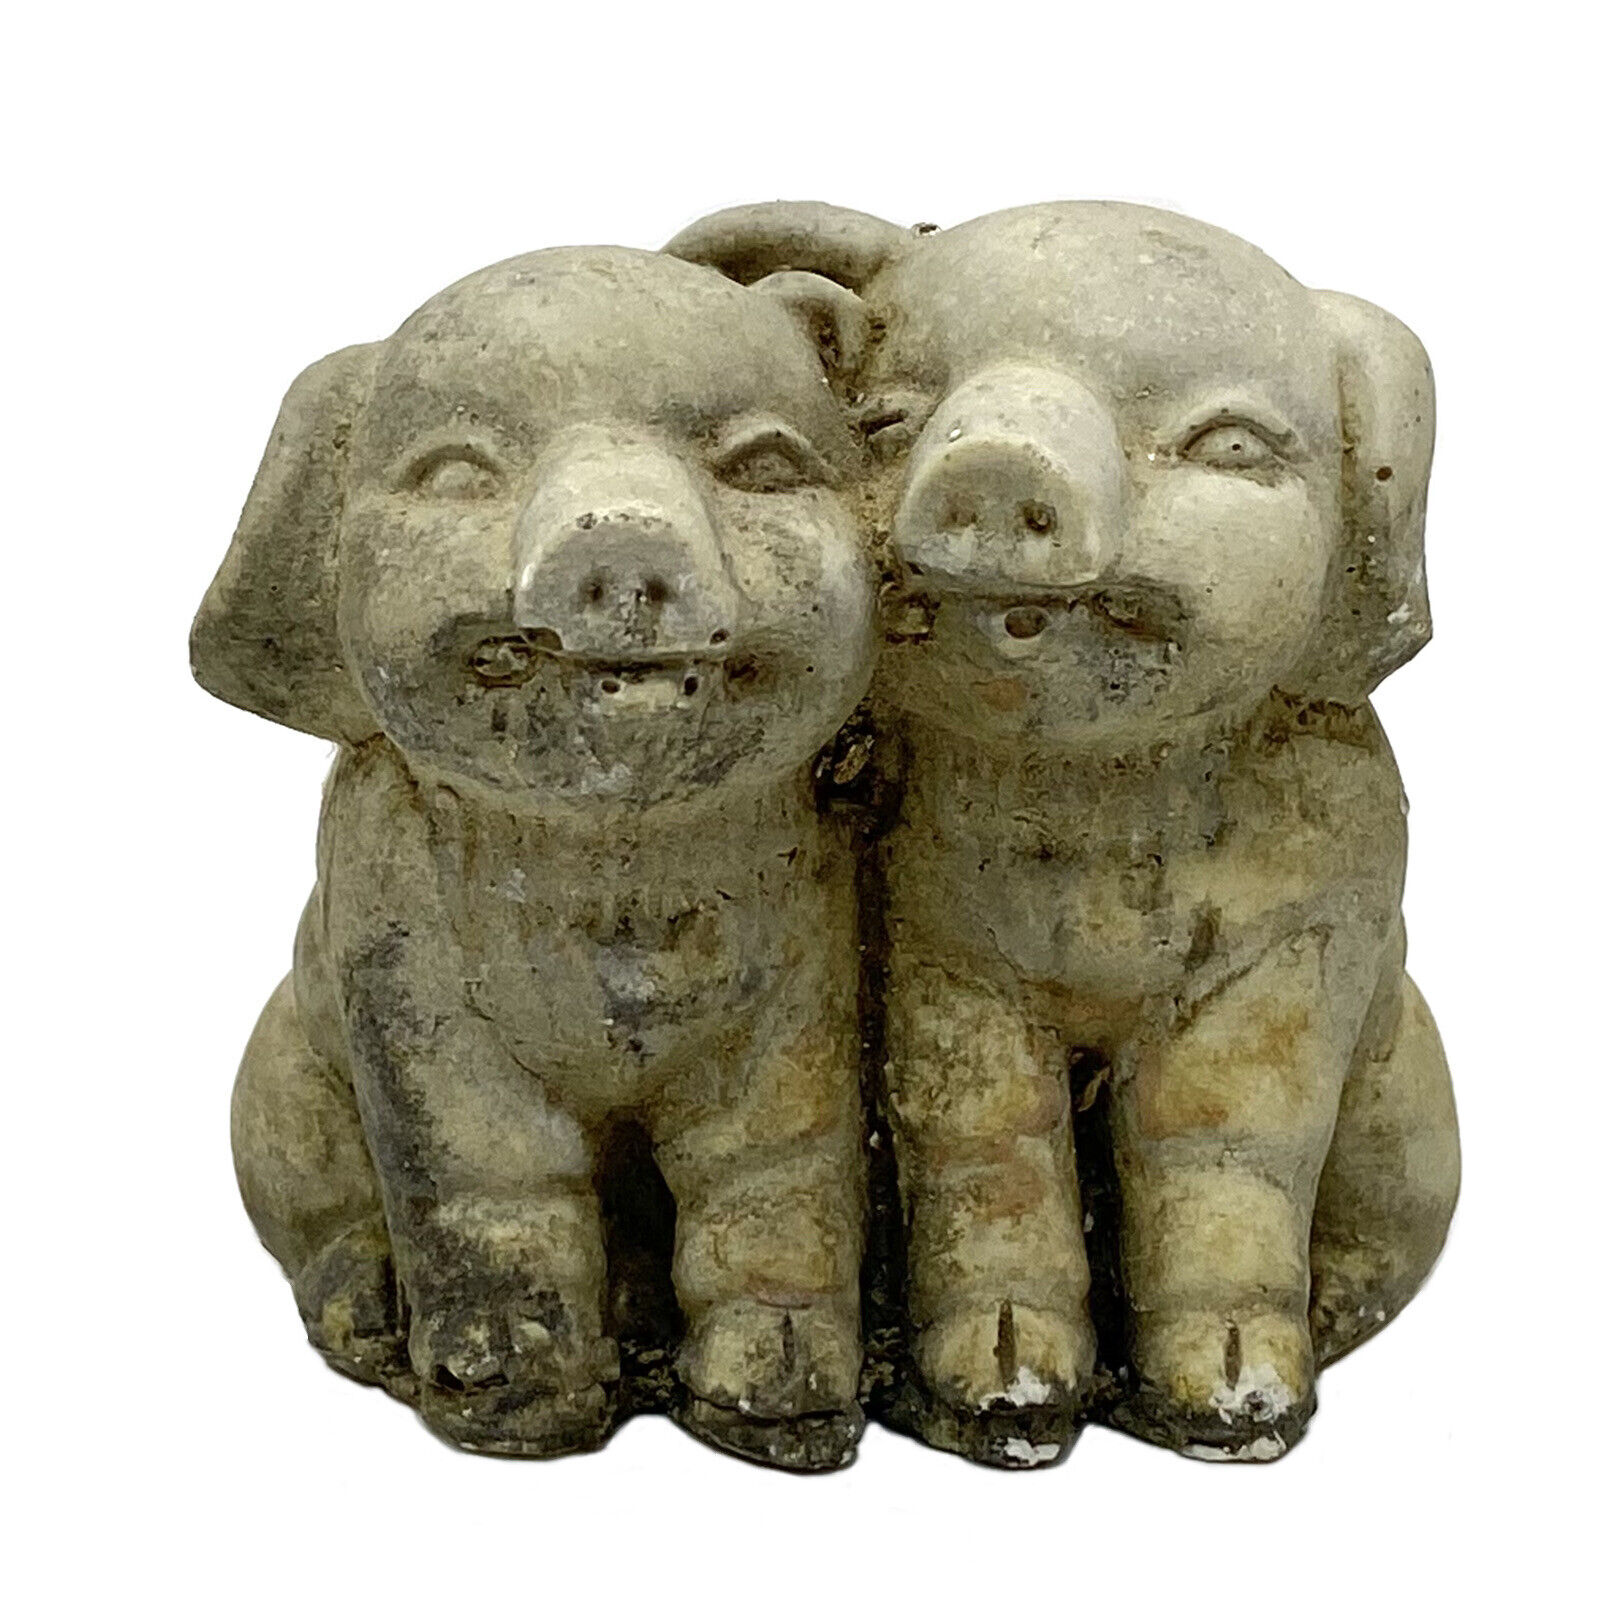 Antique Pair of PIGS Figurine